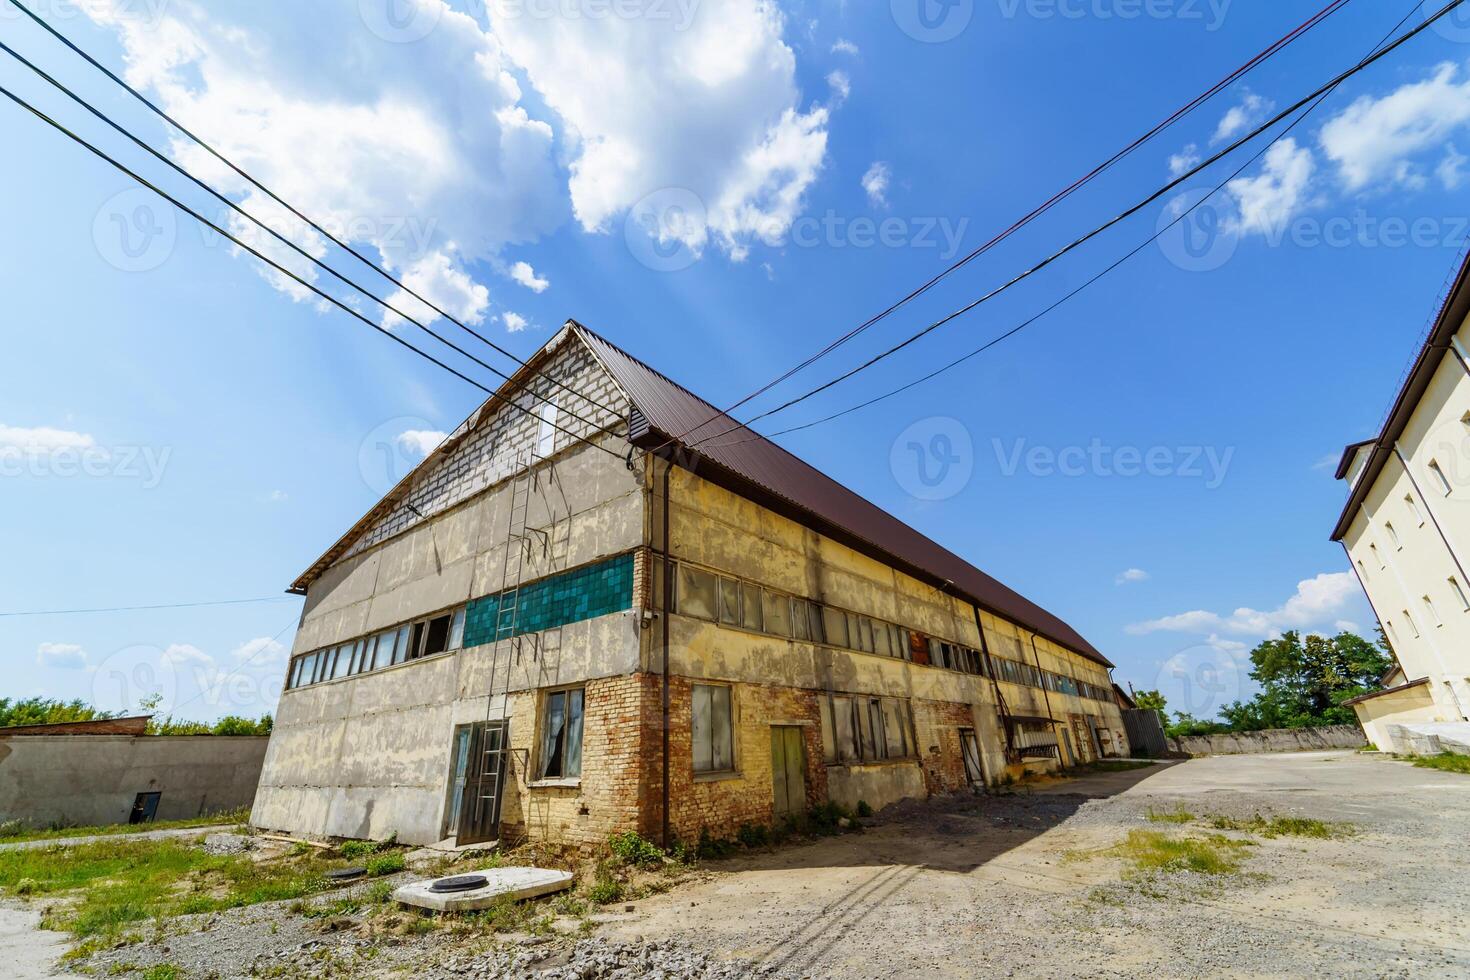 övergiven fabrik hus. gammal industriell byggnad utomhus- se på solig sommar dag. foto